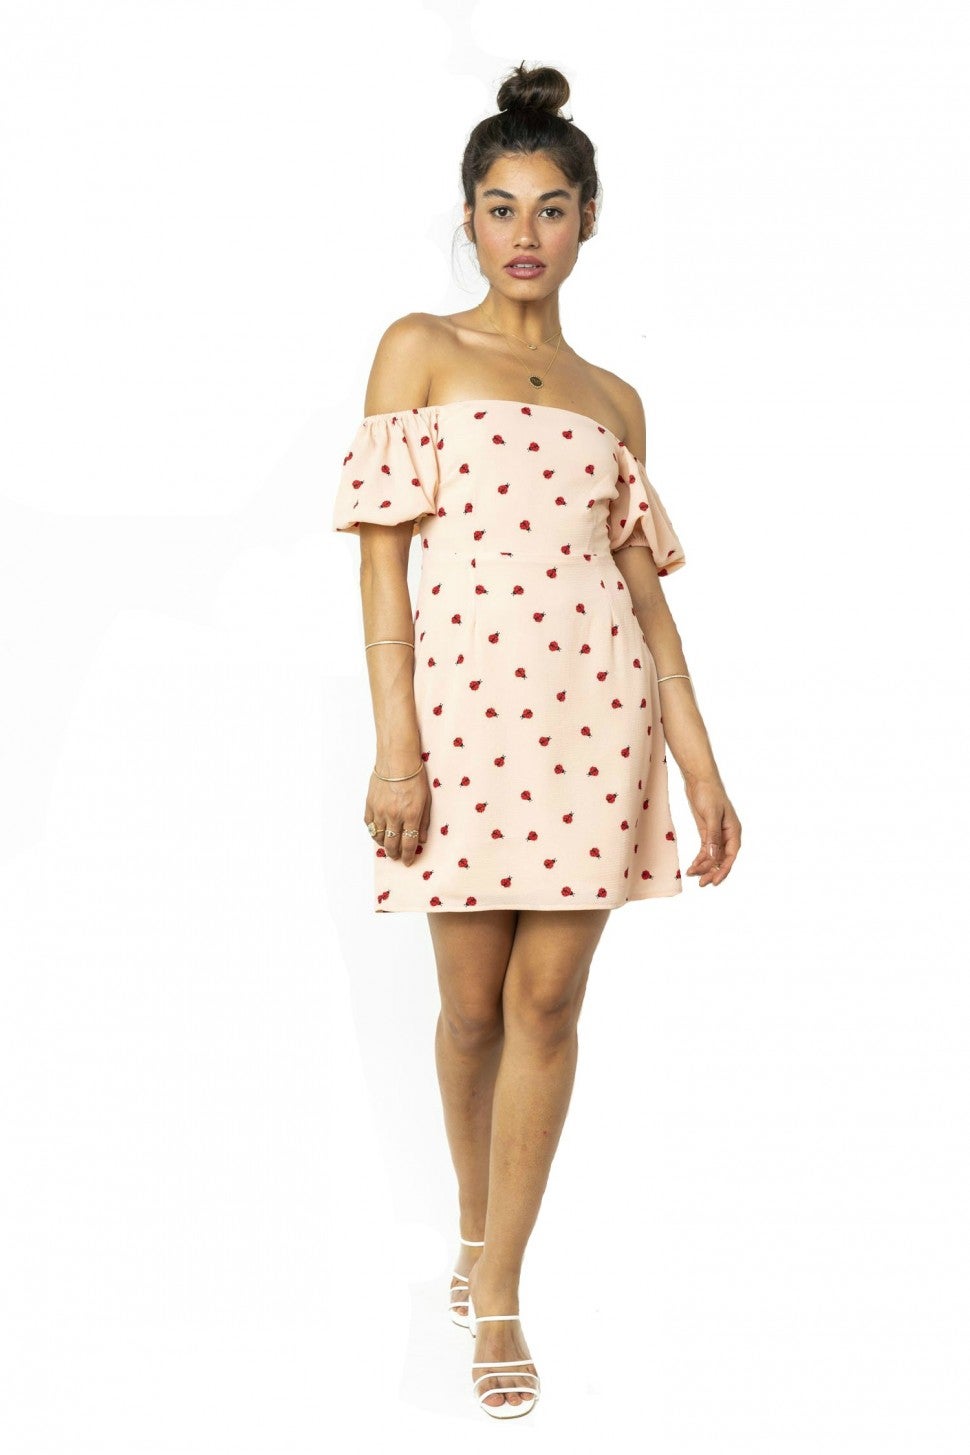 Endless Summer ladybug off-the-shoulder dress